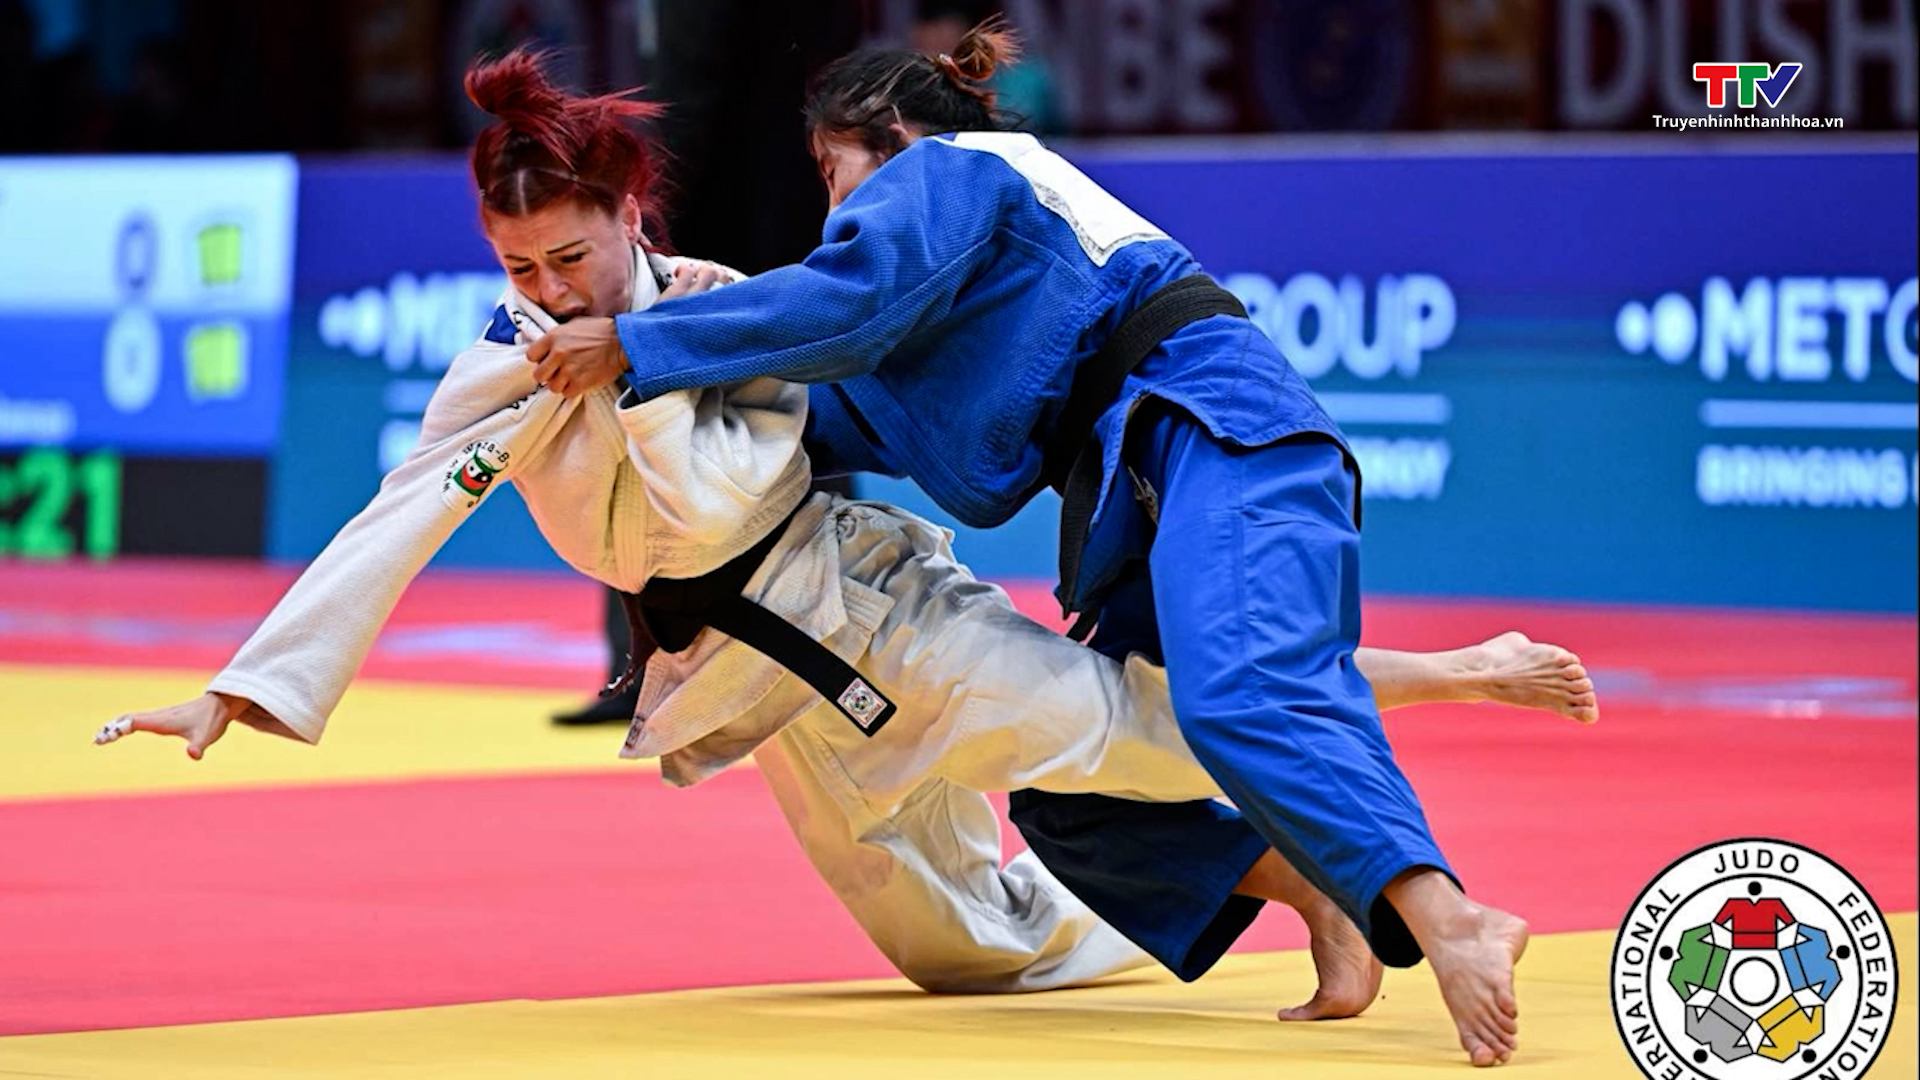 Võ sỹ môn Judo Hoàng Thị Tình được chào đón và tặng thưởng sau khi giành vé chính thức tham dự Olympic Paris 2024- Ảnh 1.